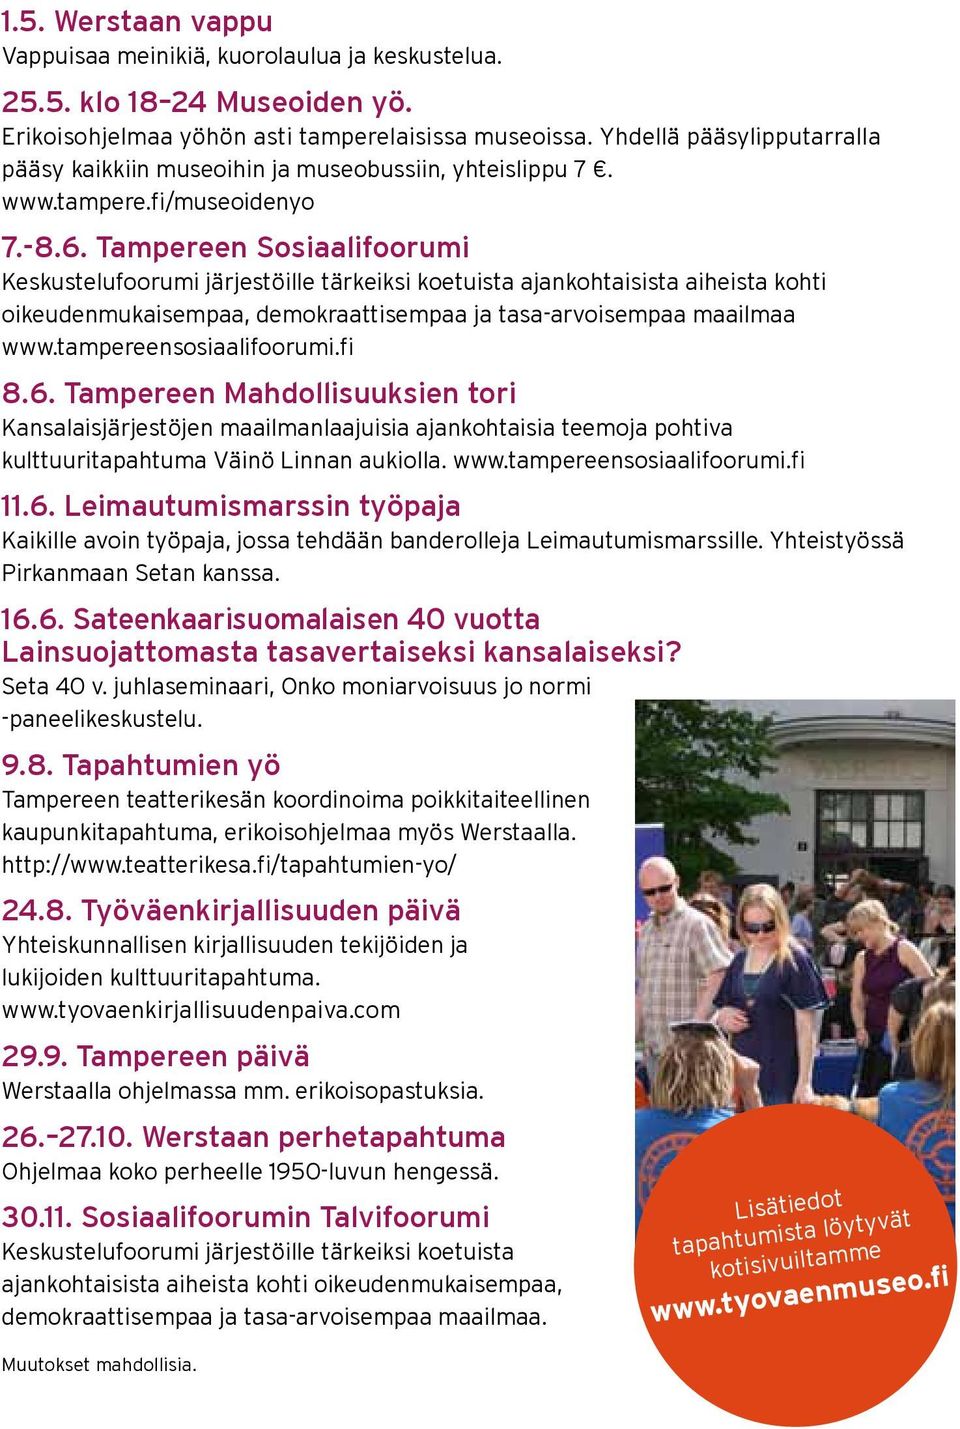 Tampereen Sosiaalifoorumi Keskustelufoorumi järjestöille tärkeiksi koetuista ajankohtaisista aiheista kohti oikeudenmukaisempaa, demokraattisempaa ja tasa-arvoisempaa maailmaa www.